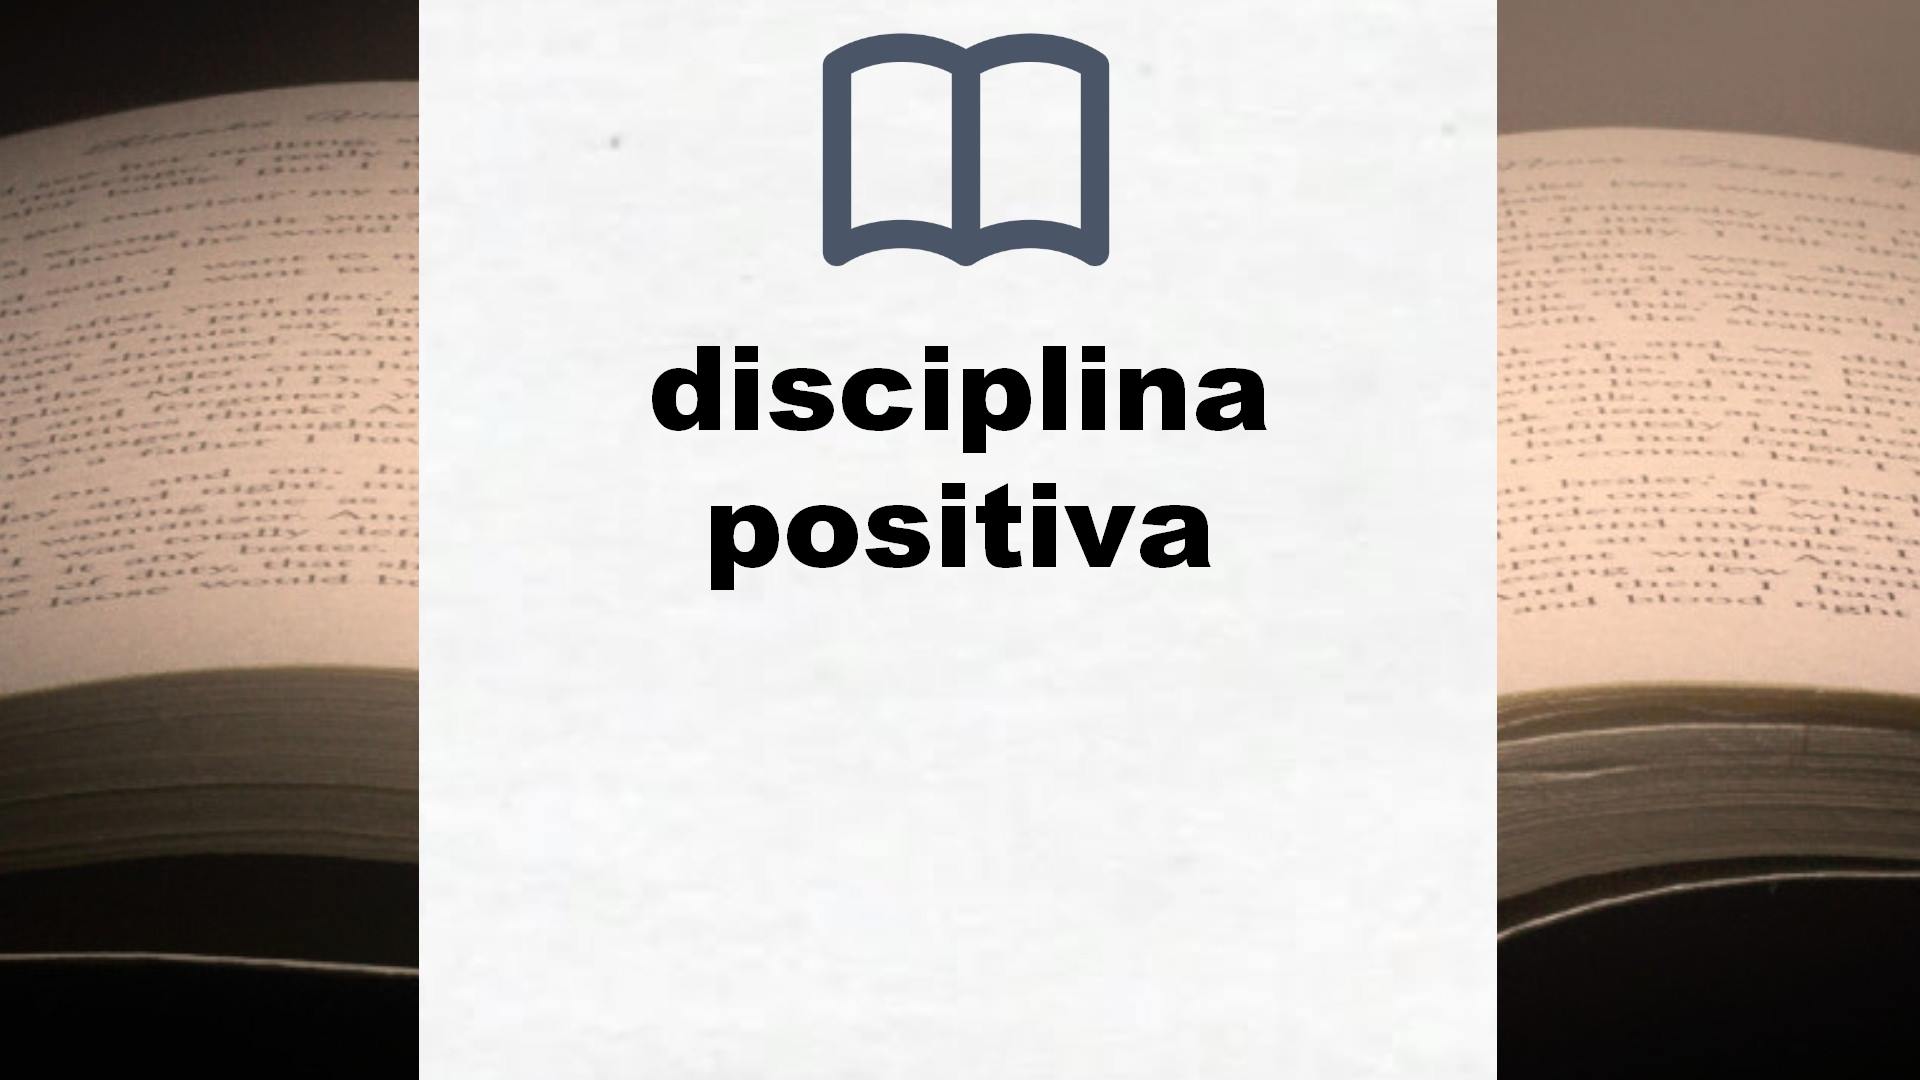 Libros sobre disciplina positiva